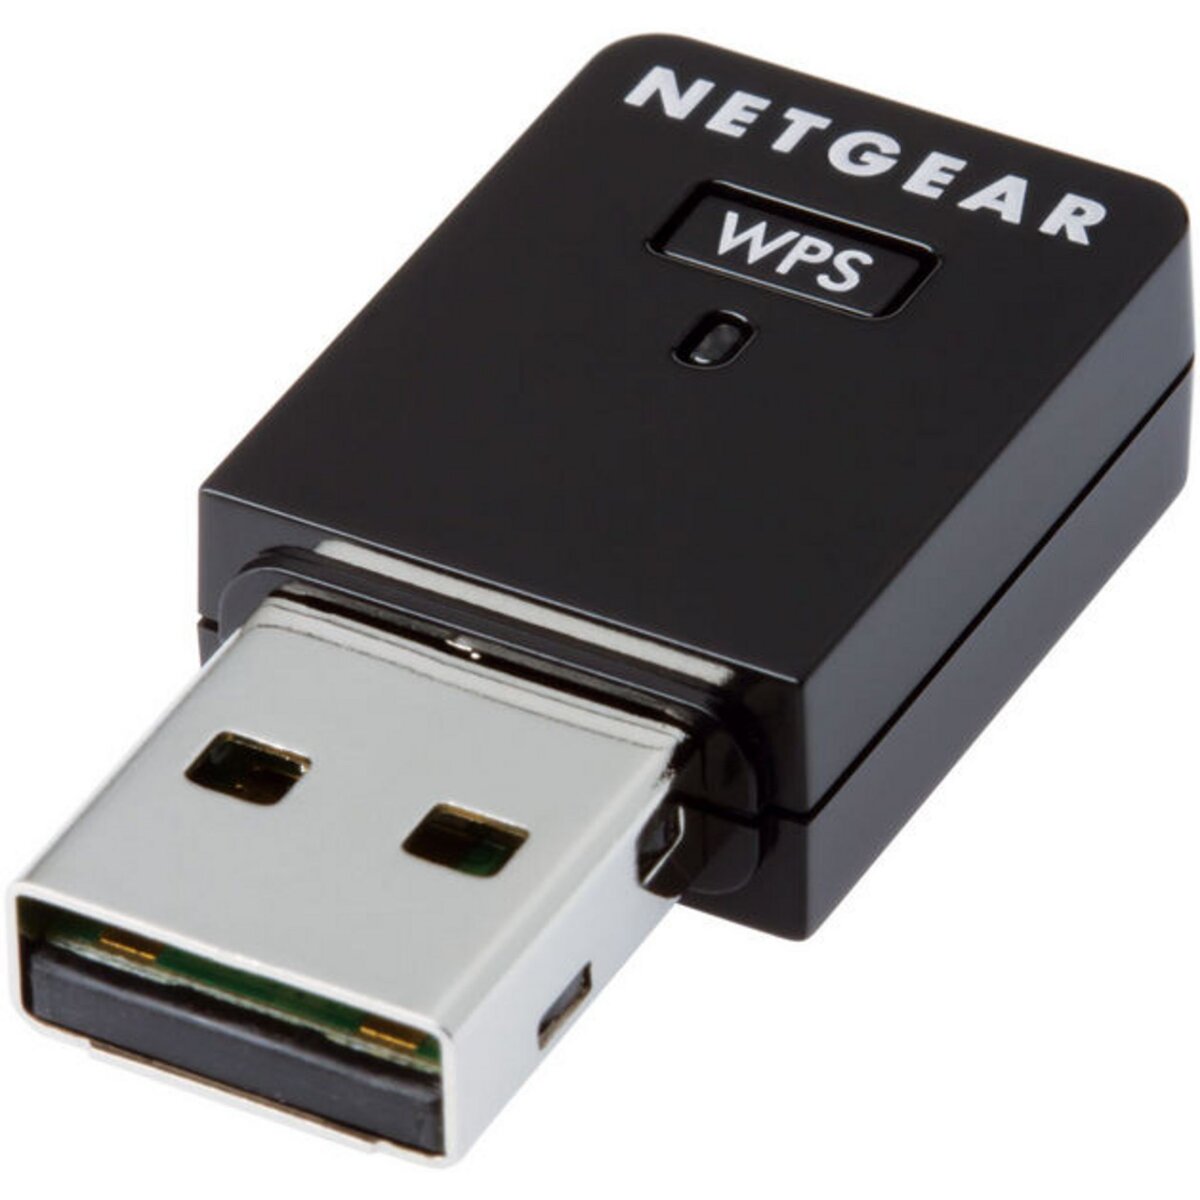 Netgear Clé USB Wi-Fi sans fil WNA3100M N300